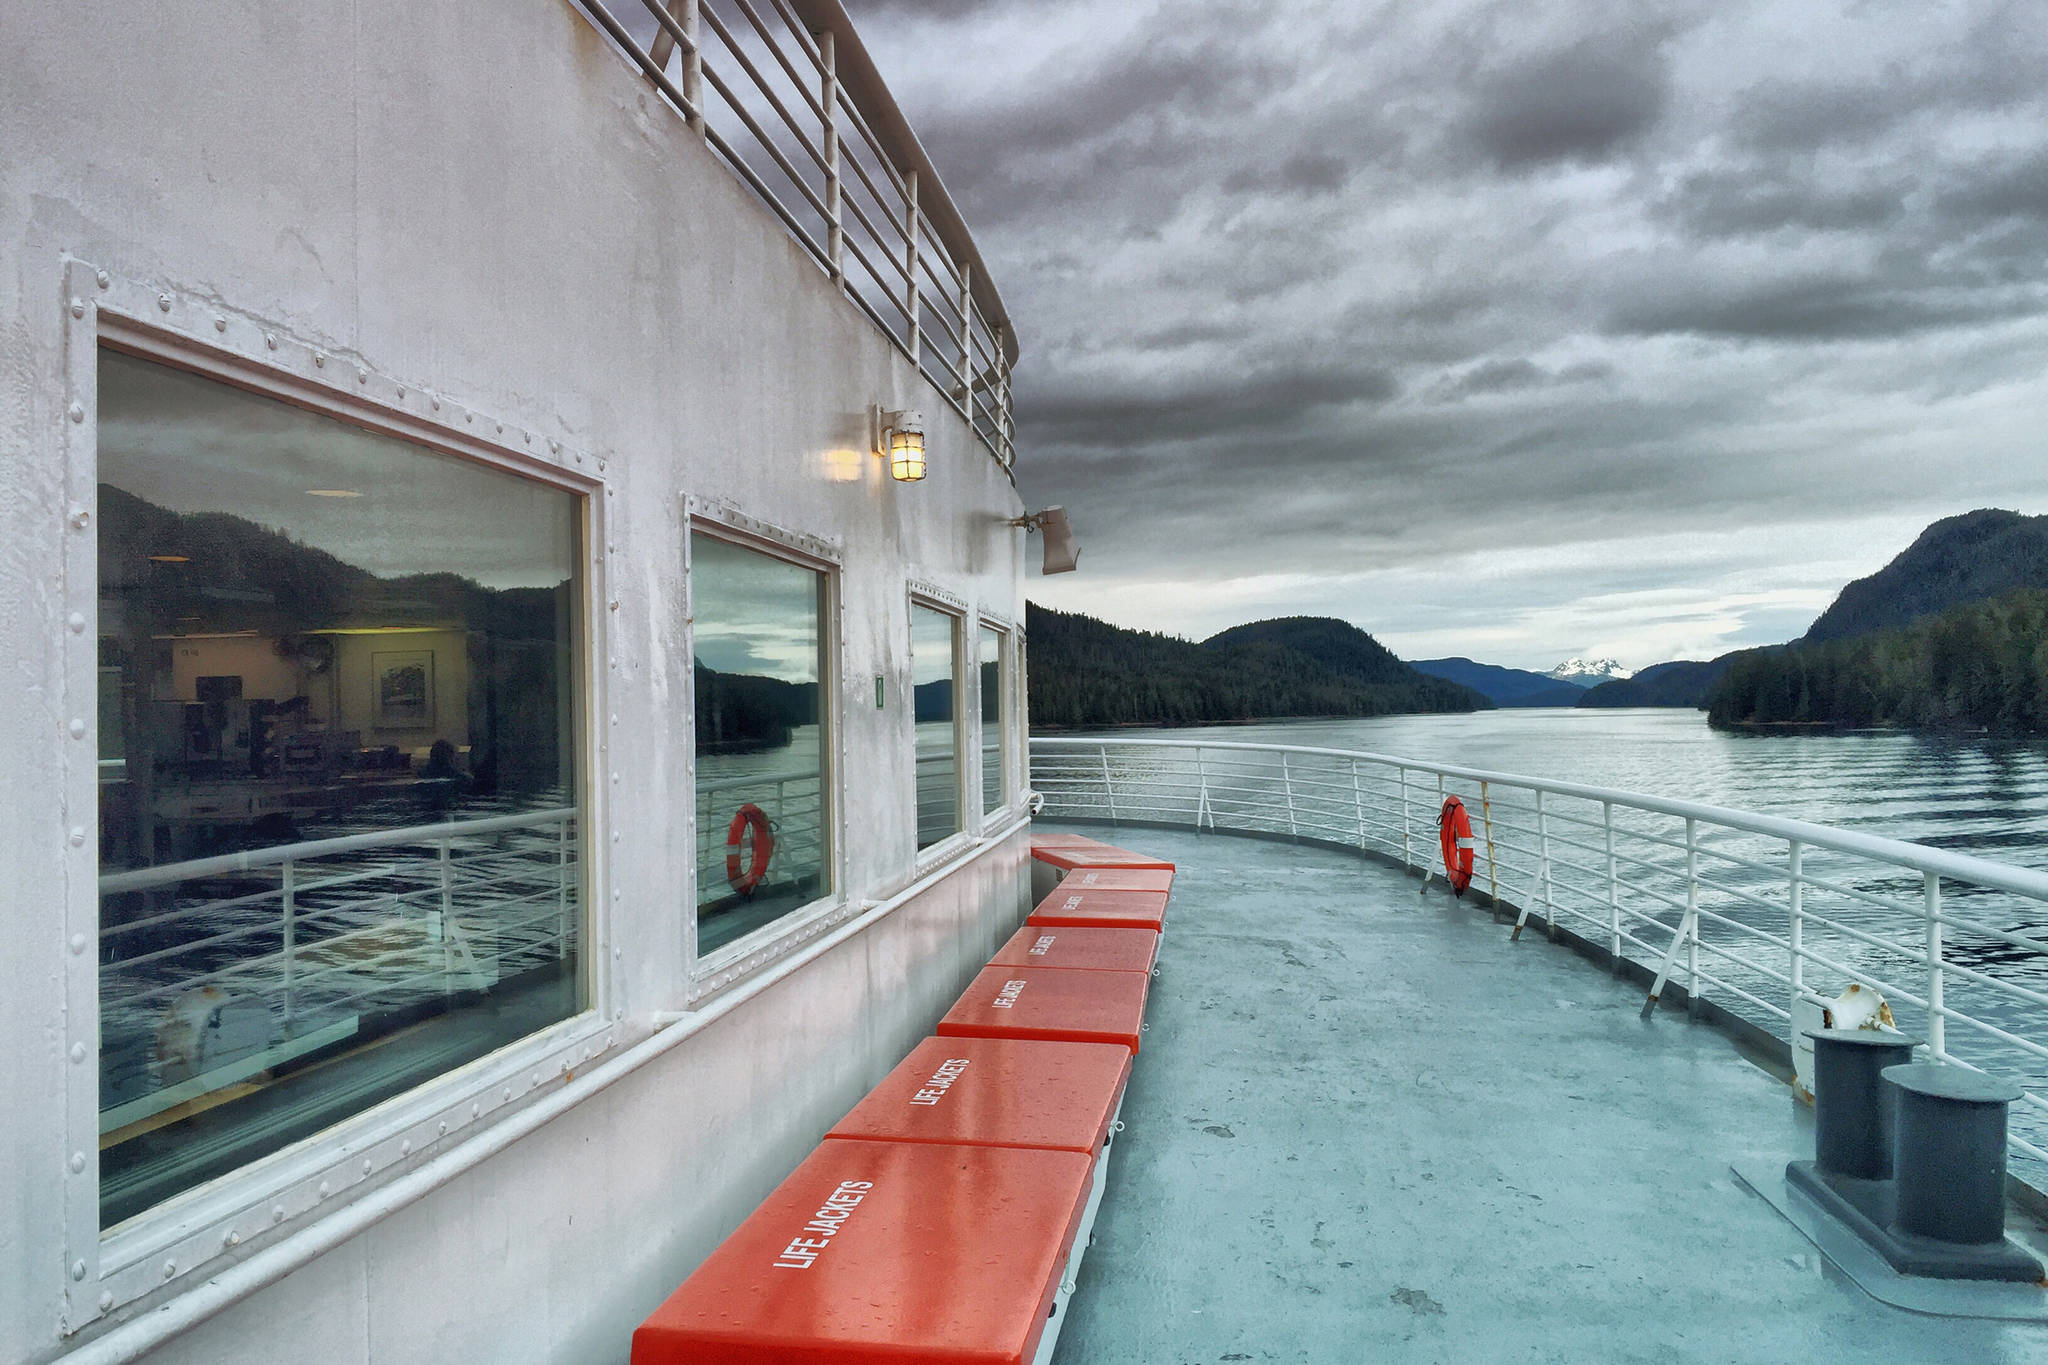 Planet Alaska: I believe in ferries